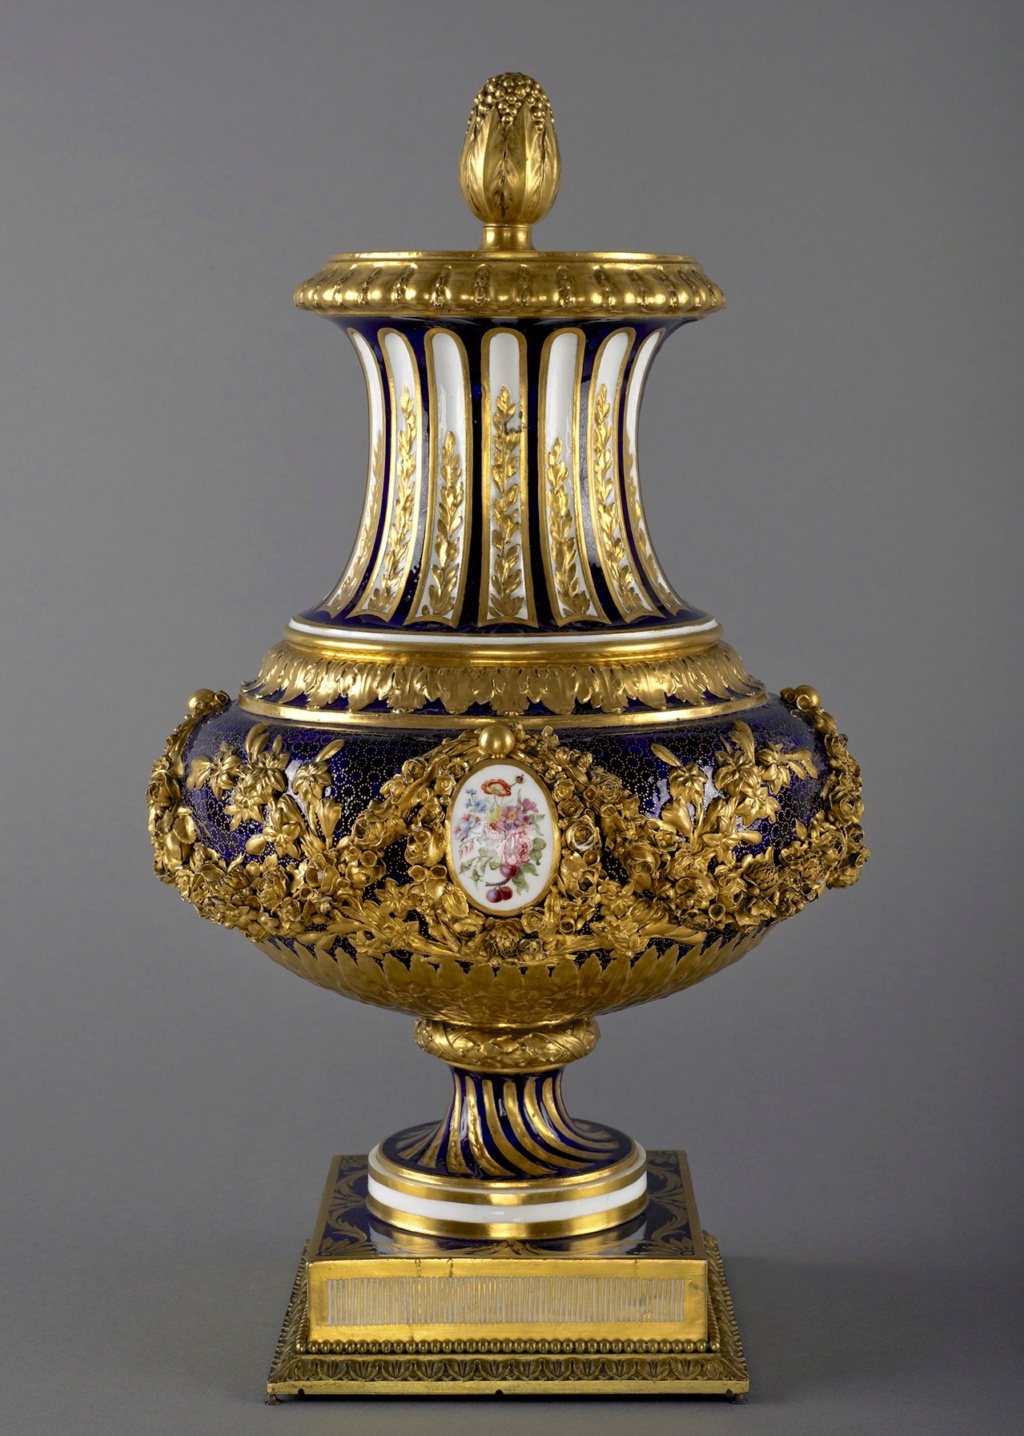 Le modèle " Vase du roi " ou " Vase du Roi guirlande ", Manufacture de Sèvres (18e siècle) Emuseu44